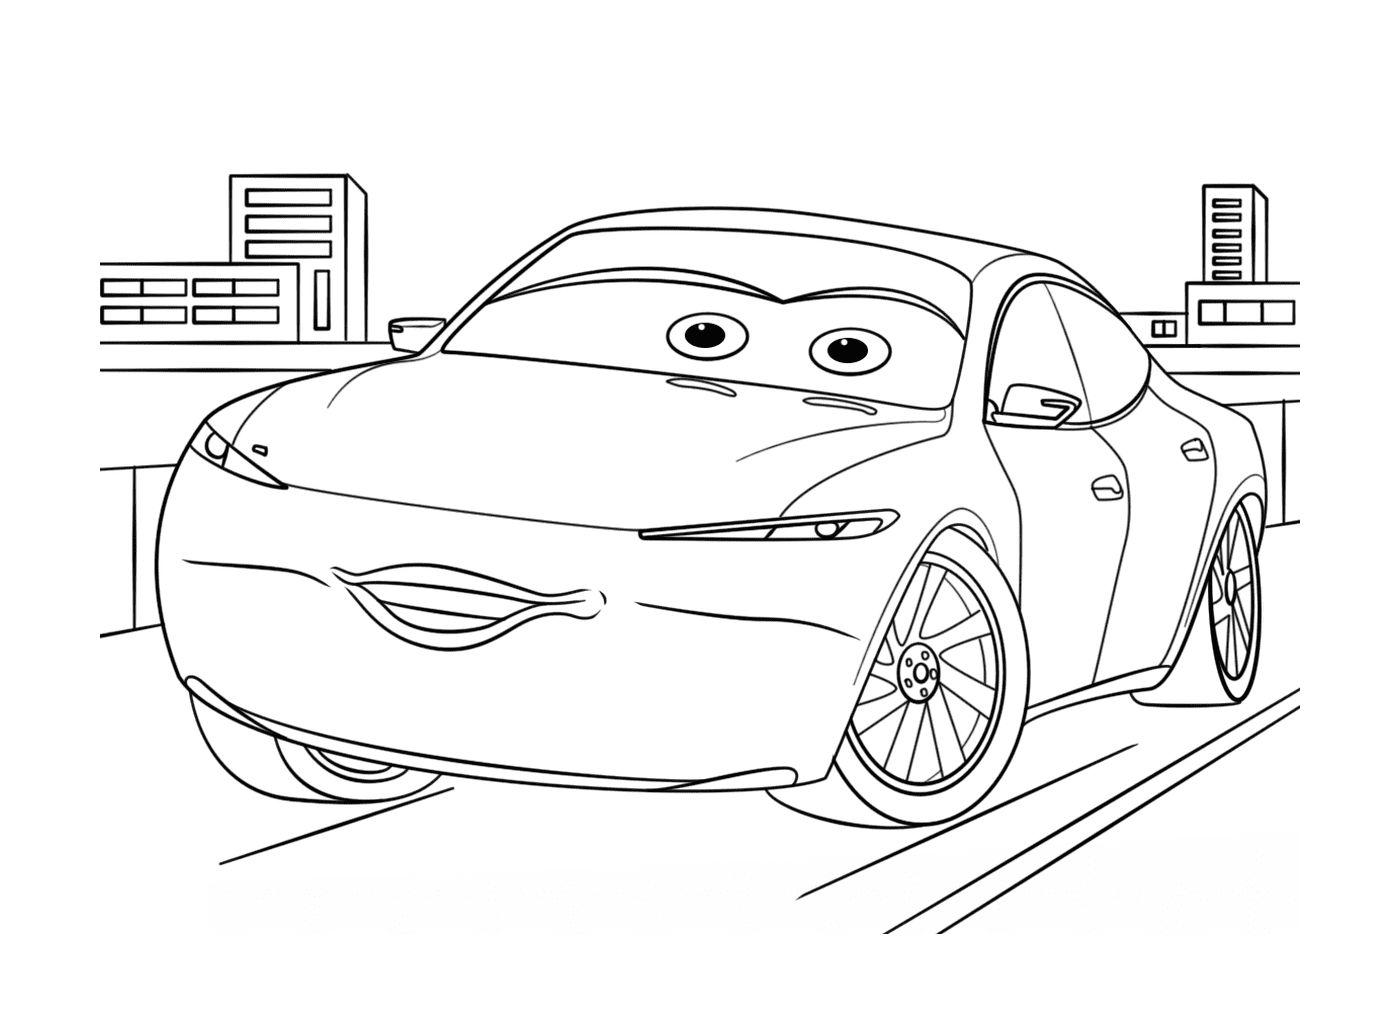  Машина с глазами, нарисованными на ней 